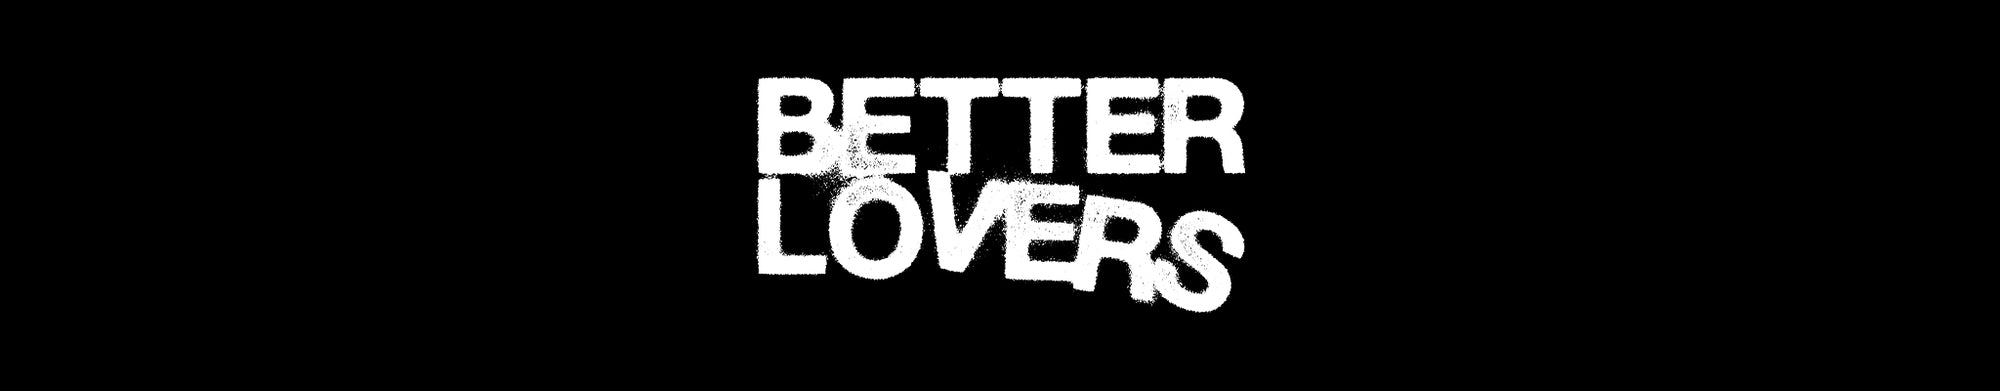 BETTER LOVERS